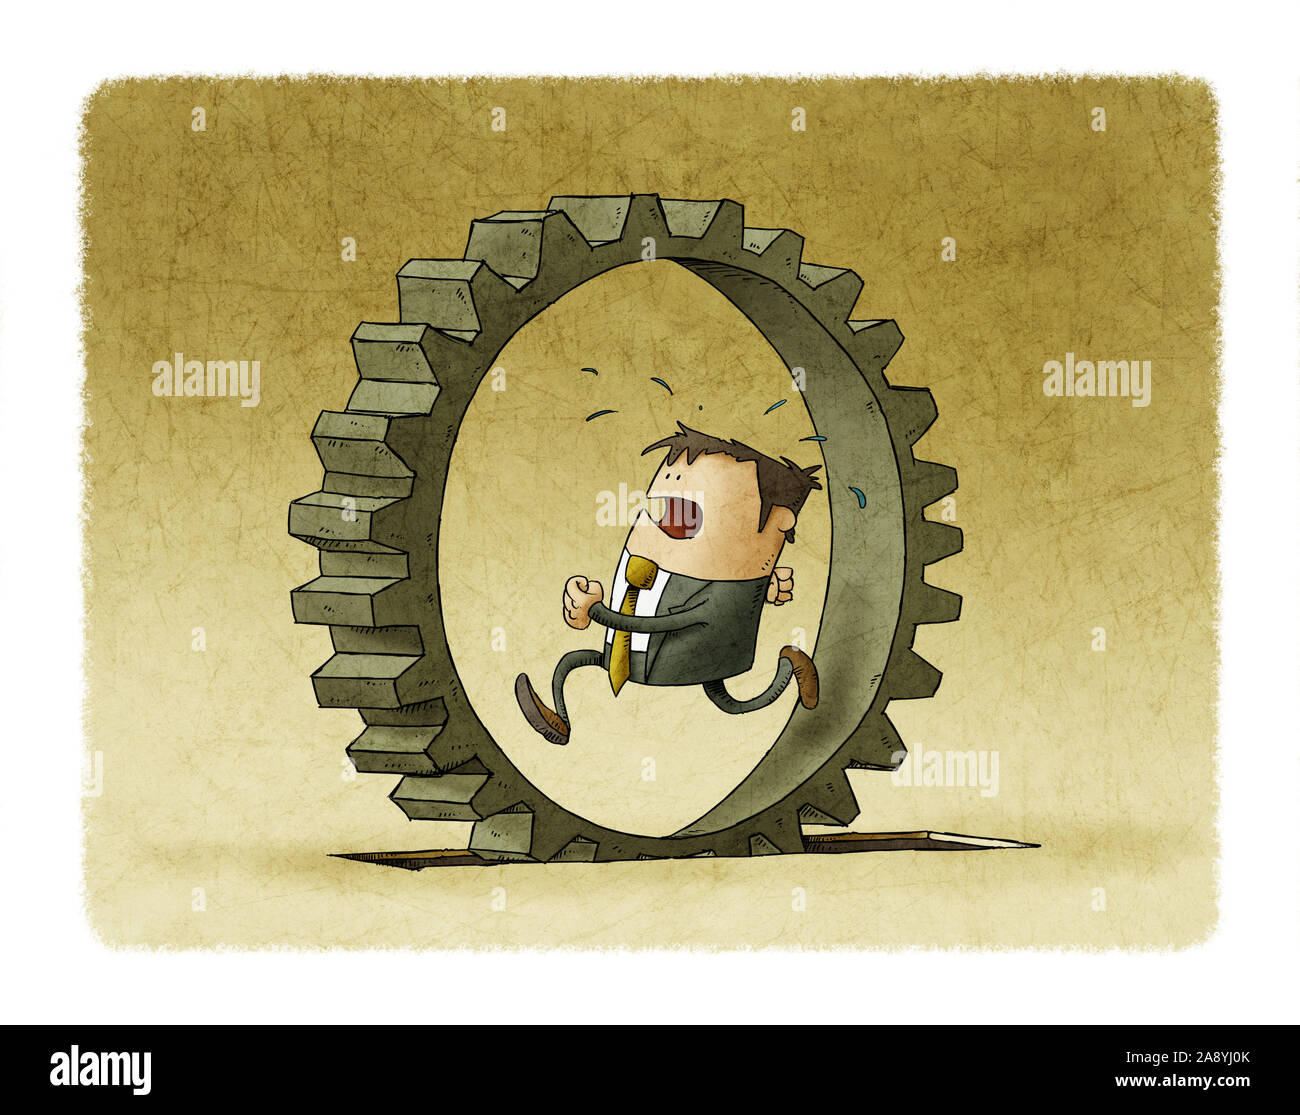 Ilustración de un empresario que se ejecute dentro de una rueda dentada, el concepto de esfuerzo y la rutina diaria. Foto de stock